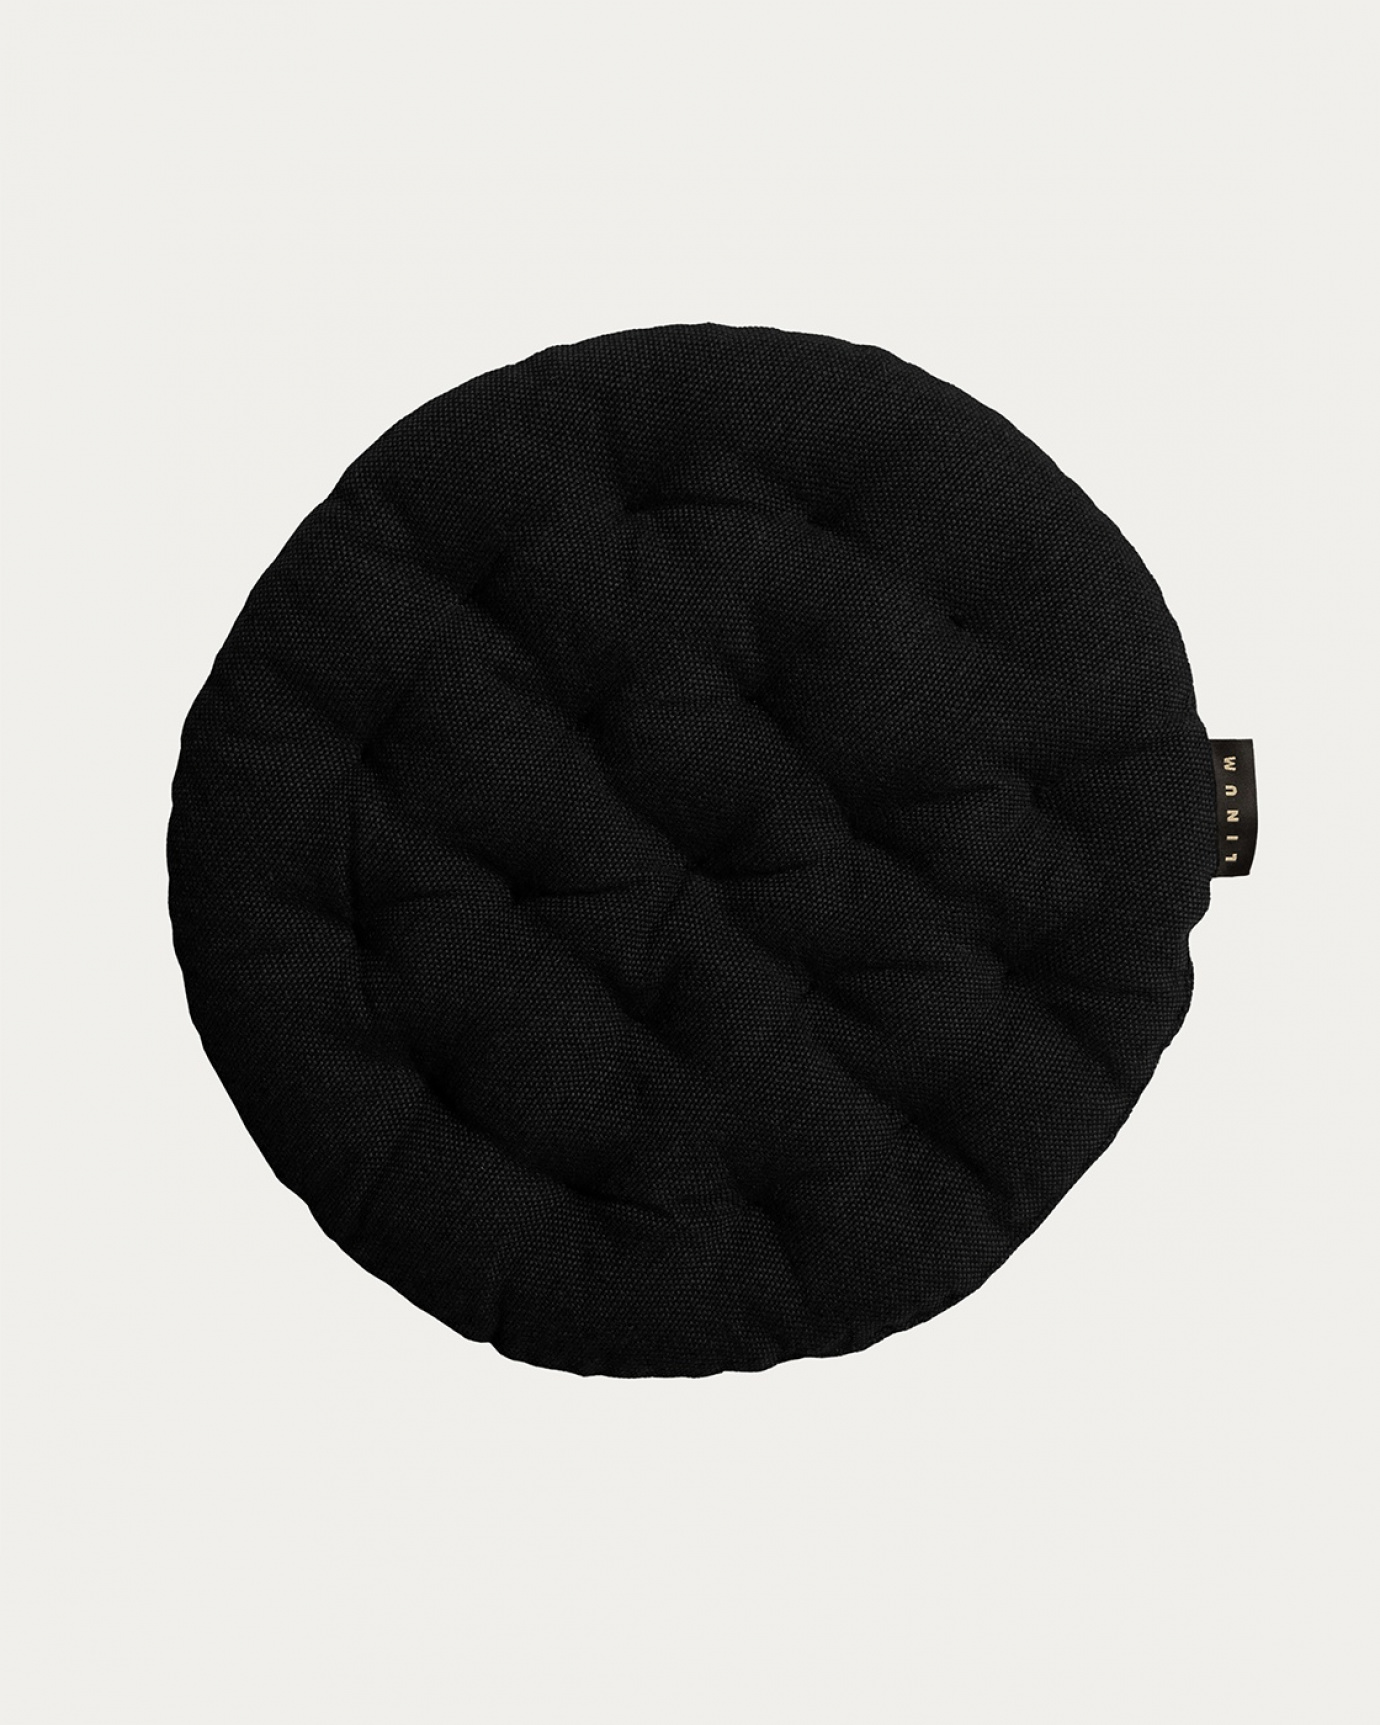 Immagine prodotto nero PEPPER cuscini sedie di cotone con imbottitura in poliestere di LINUM DESIGN. Dimensioni ø37 cm.